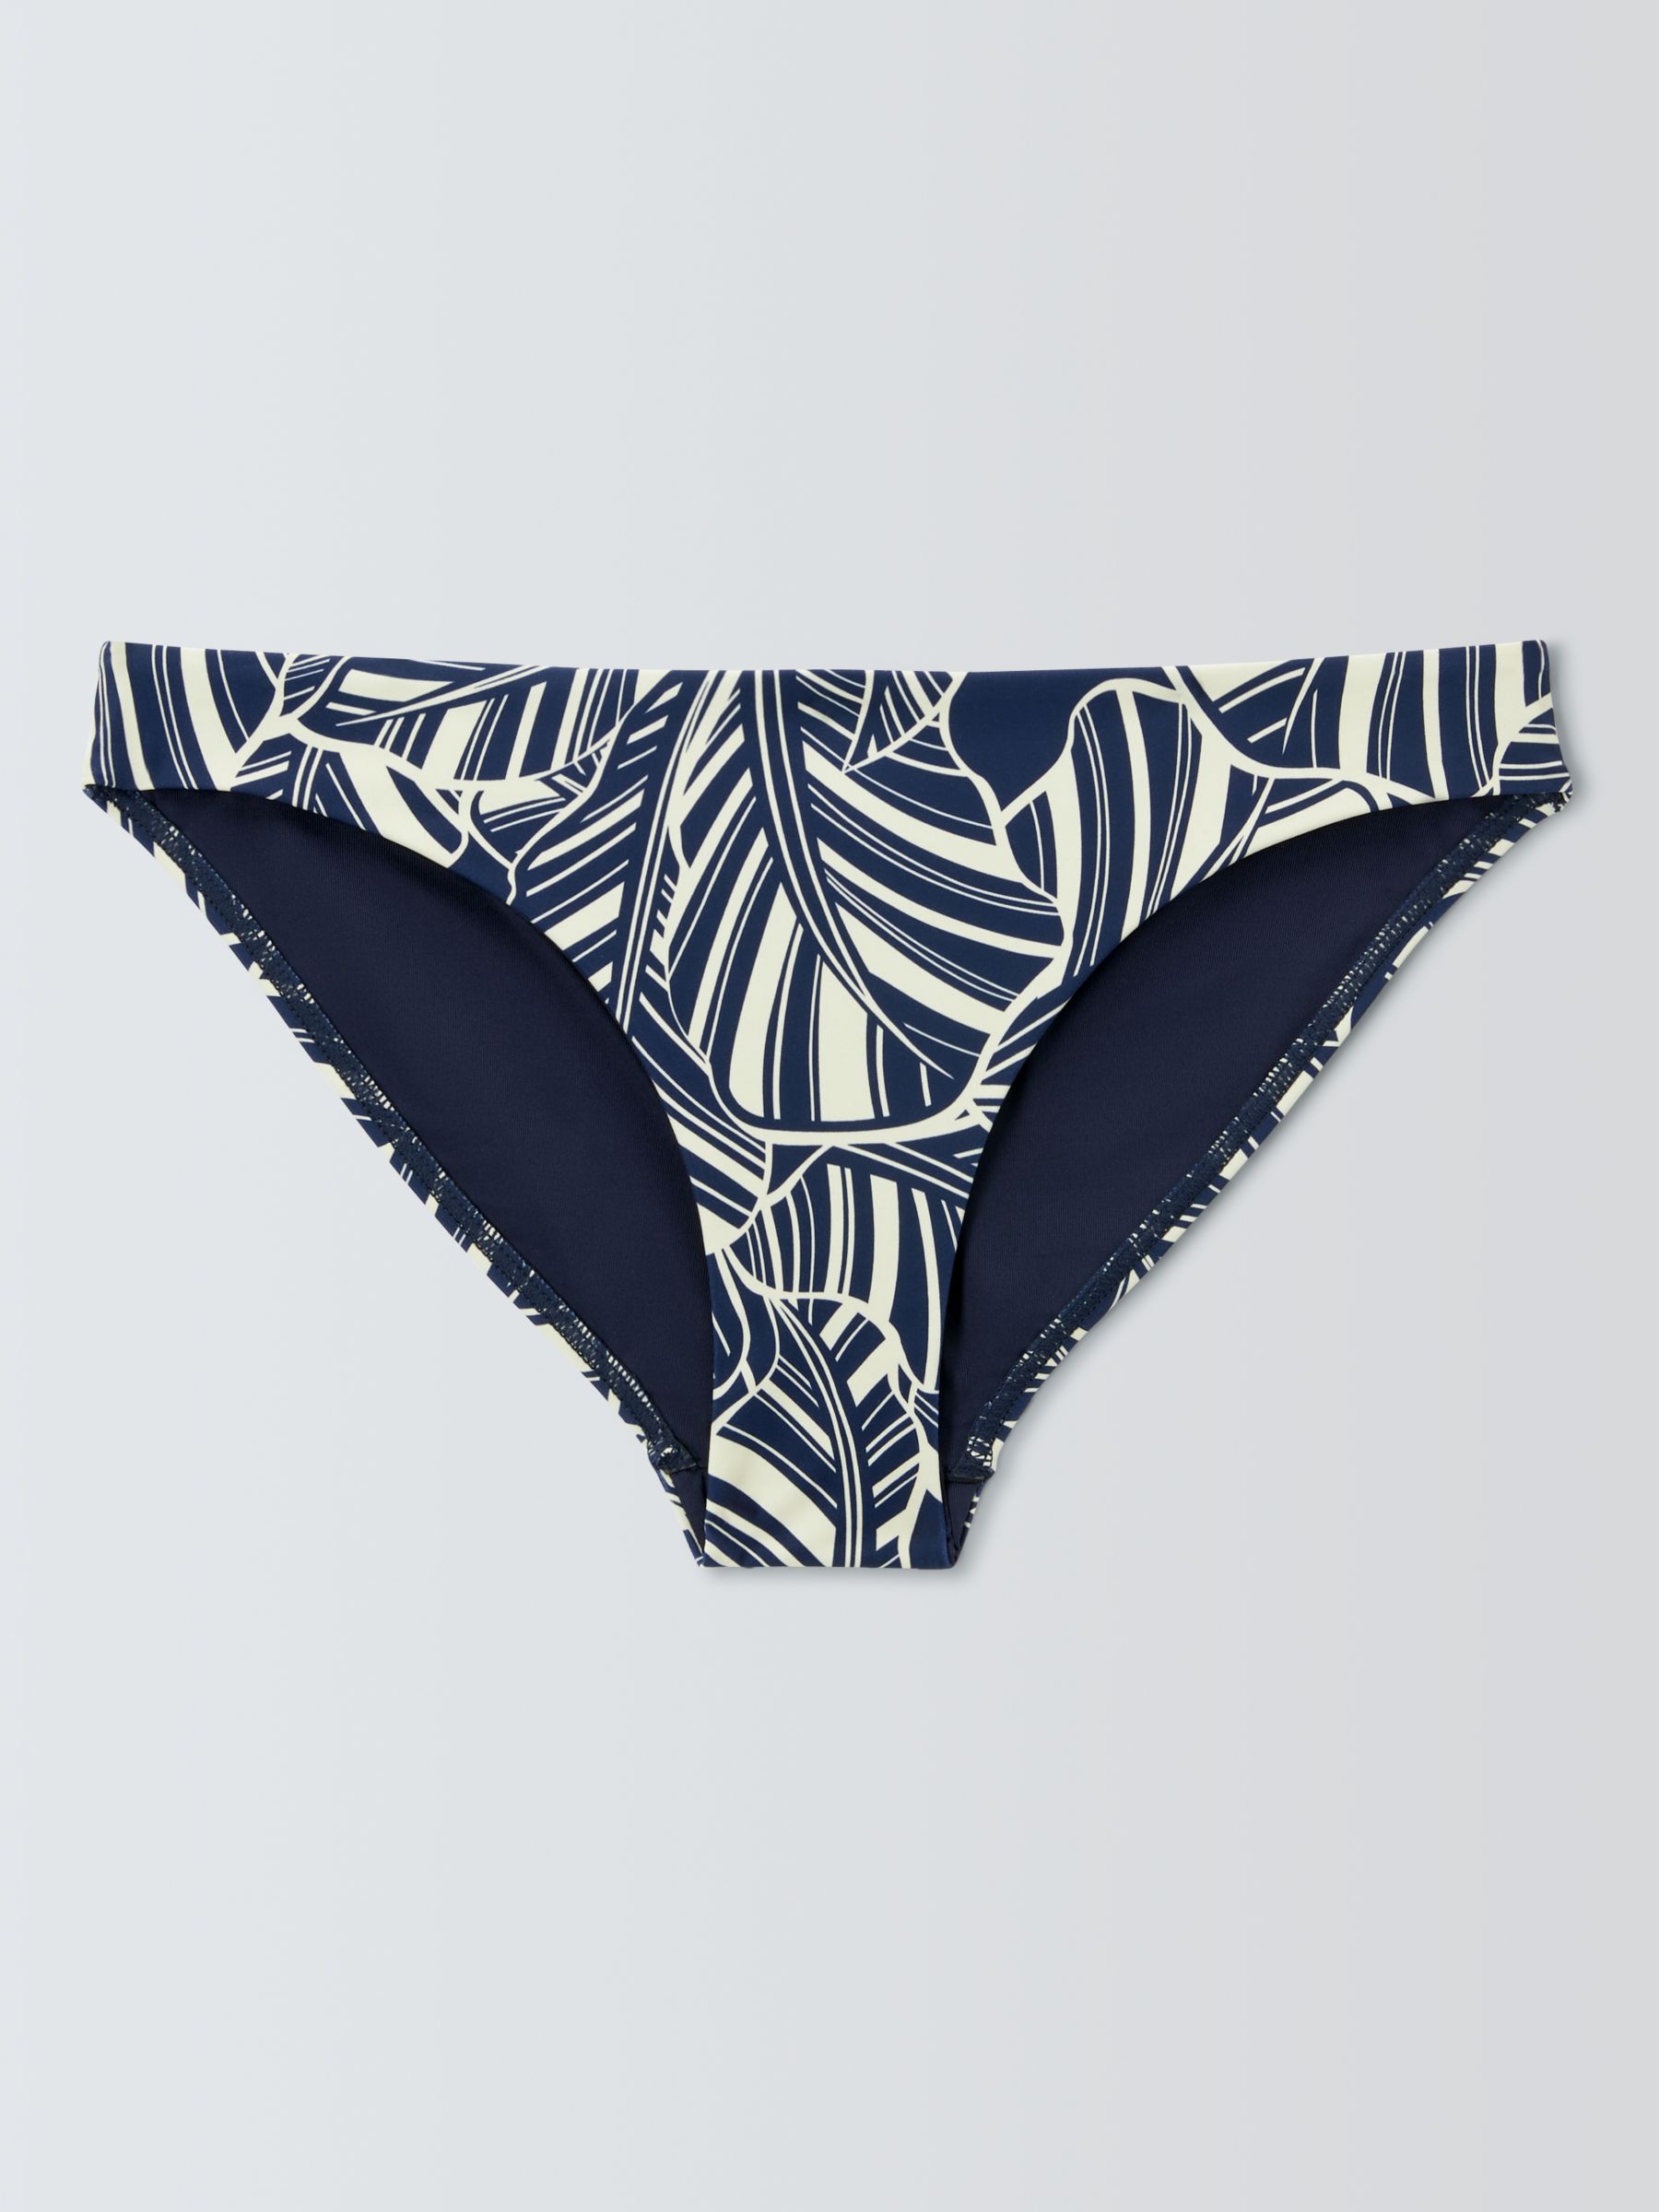 Buy John Lewis Bali Leaf Print Bikini Bottoms, Navy Online at johnlewis.com